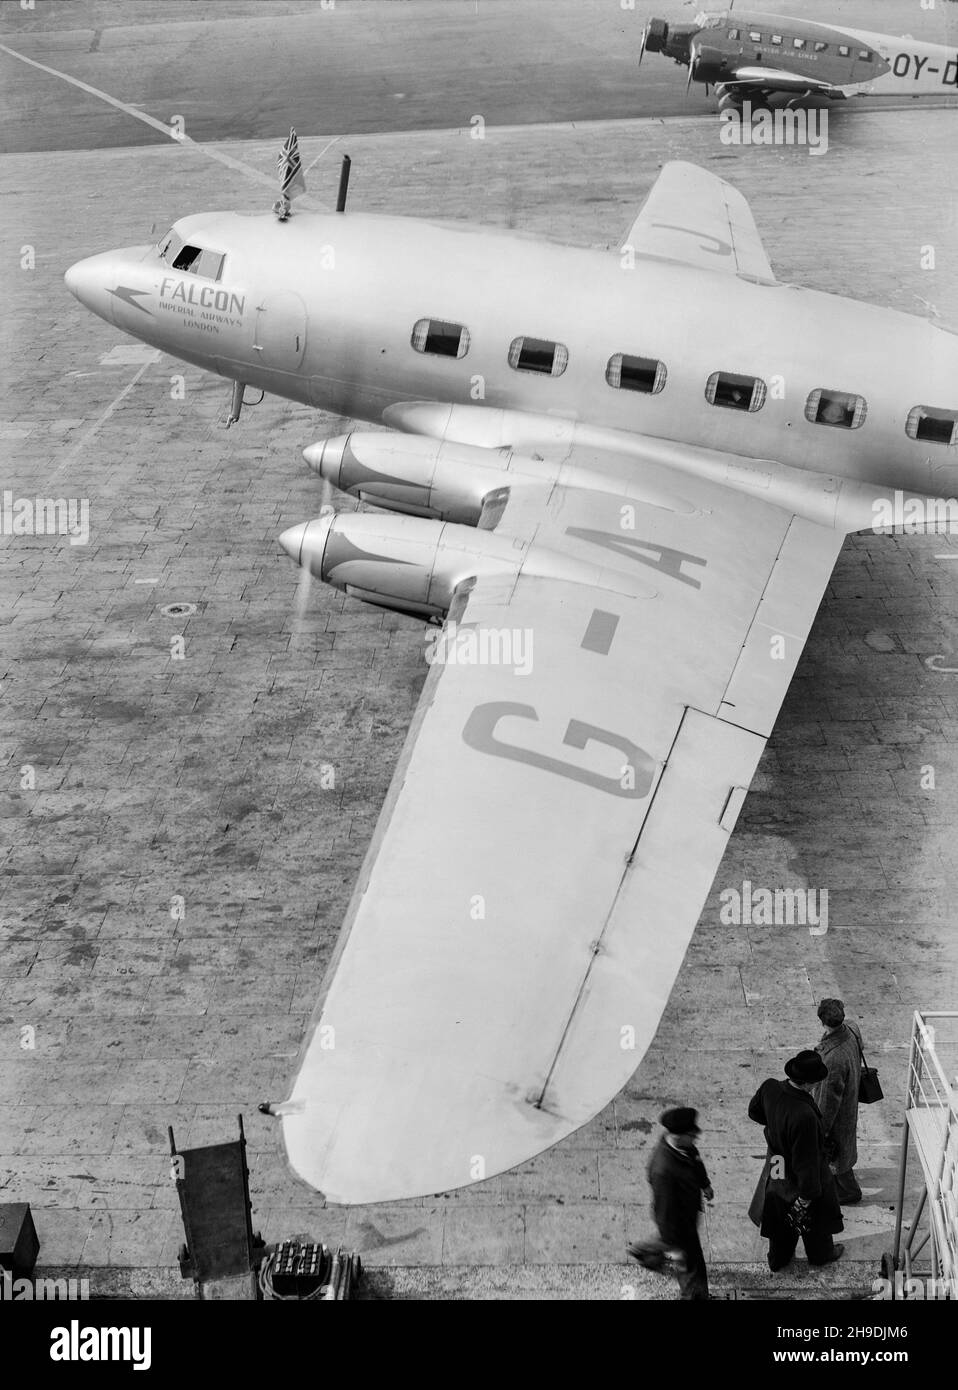 Fotografia vintage in bianco e nero scattata nel 1938 con un De Havilland DH.91 Albatross, numero di serie G-AFDJ, di nome Falcon, della Imperial Airways al Croydon Aerodrome, fuori Londra. Foto Stock